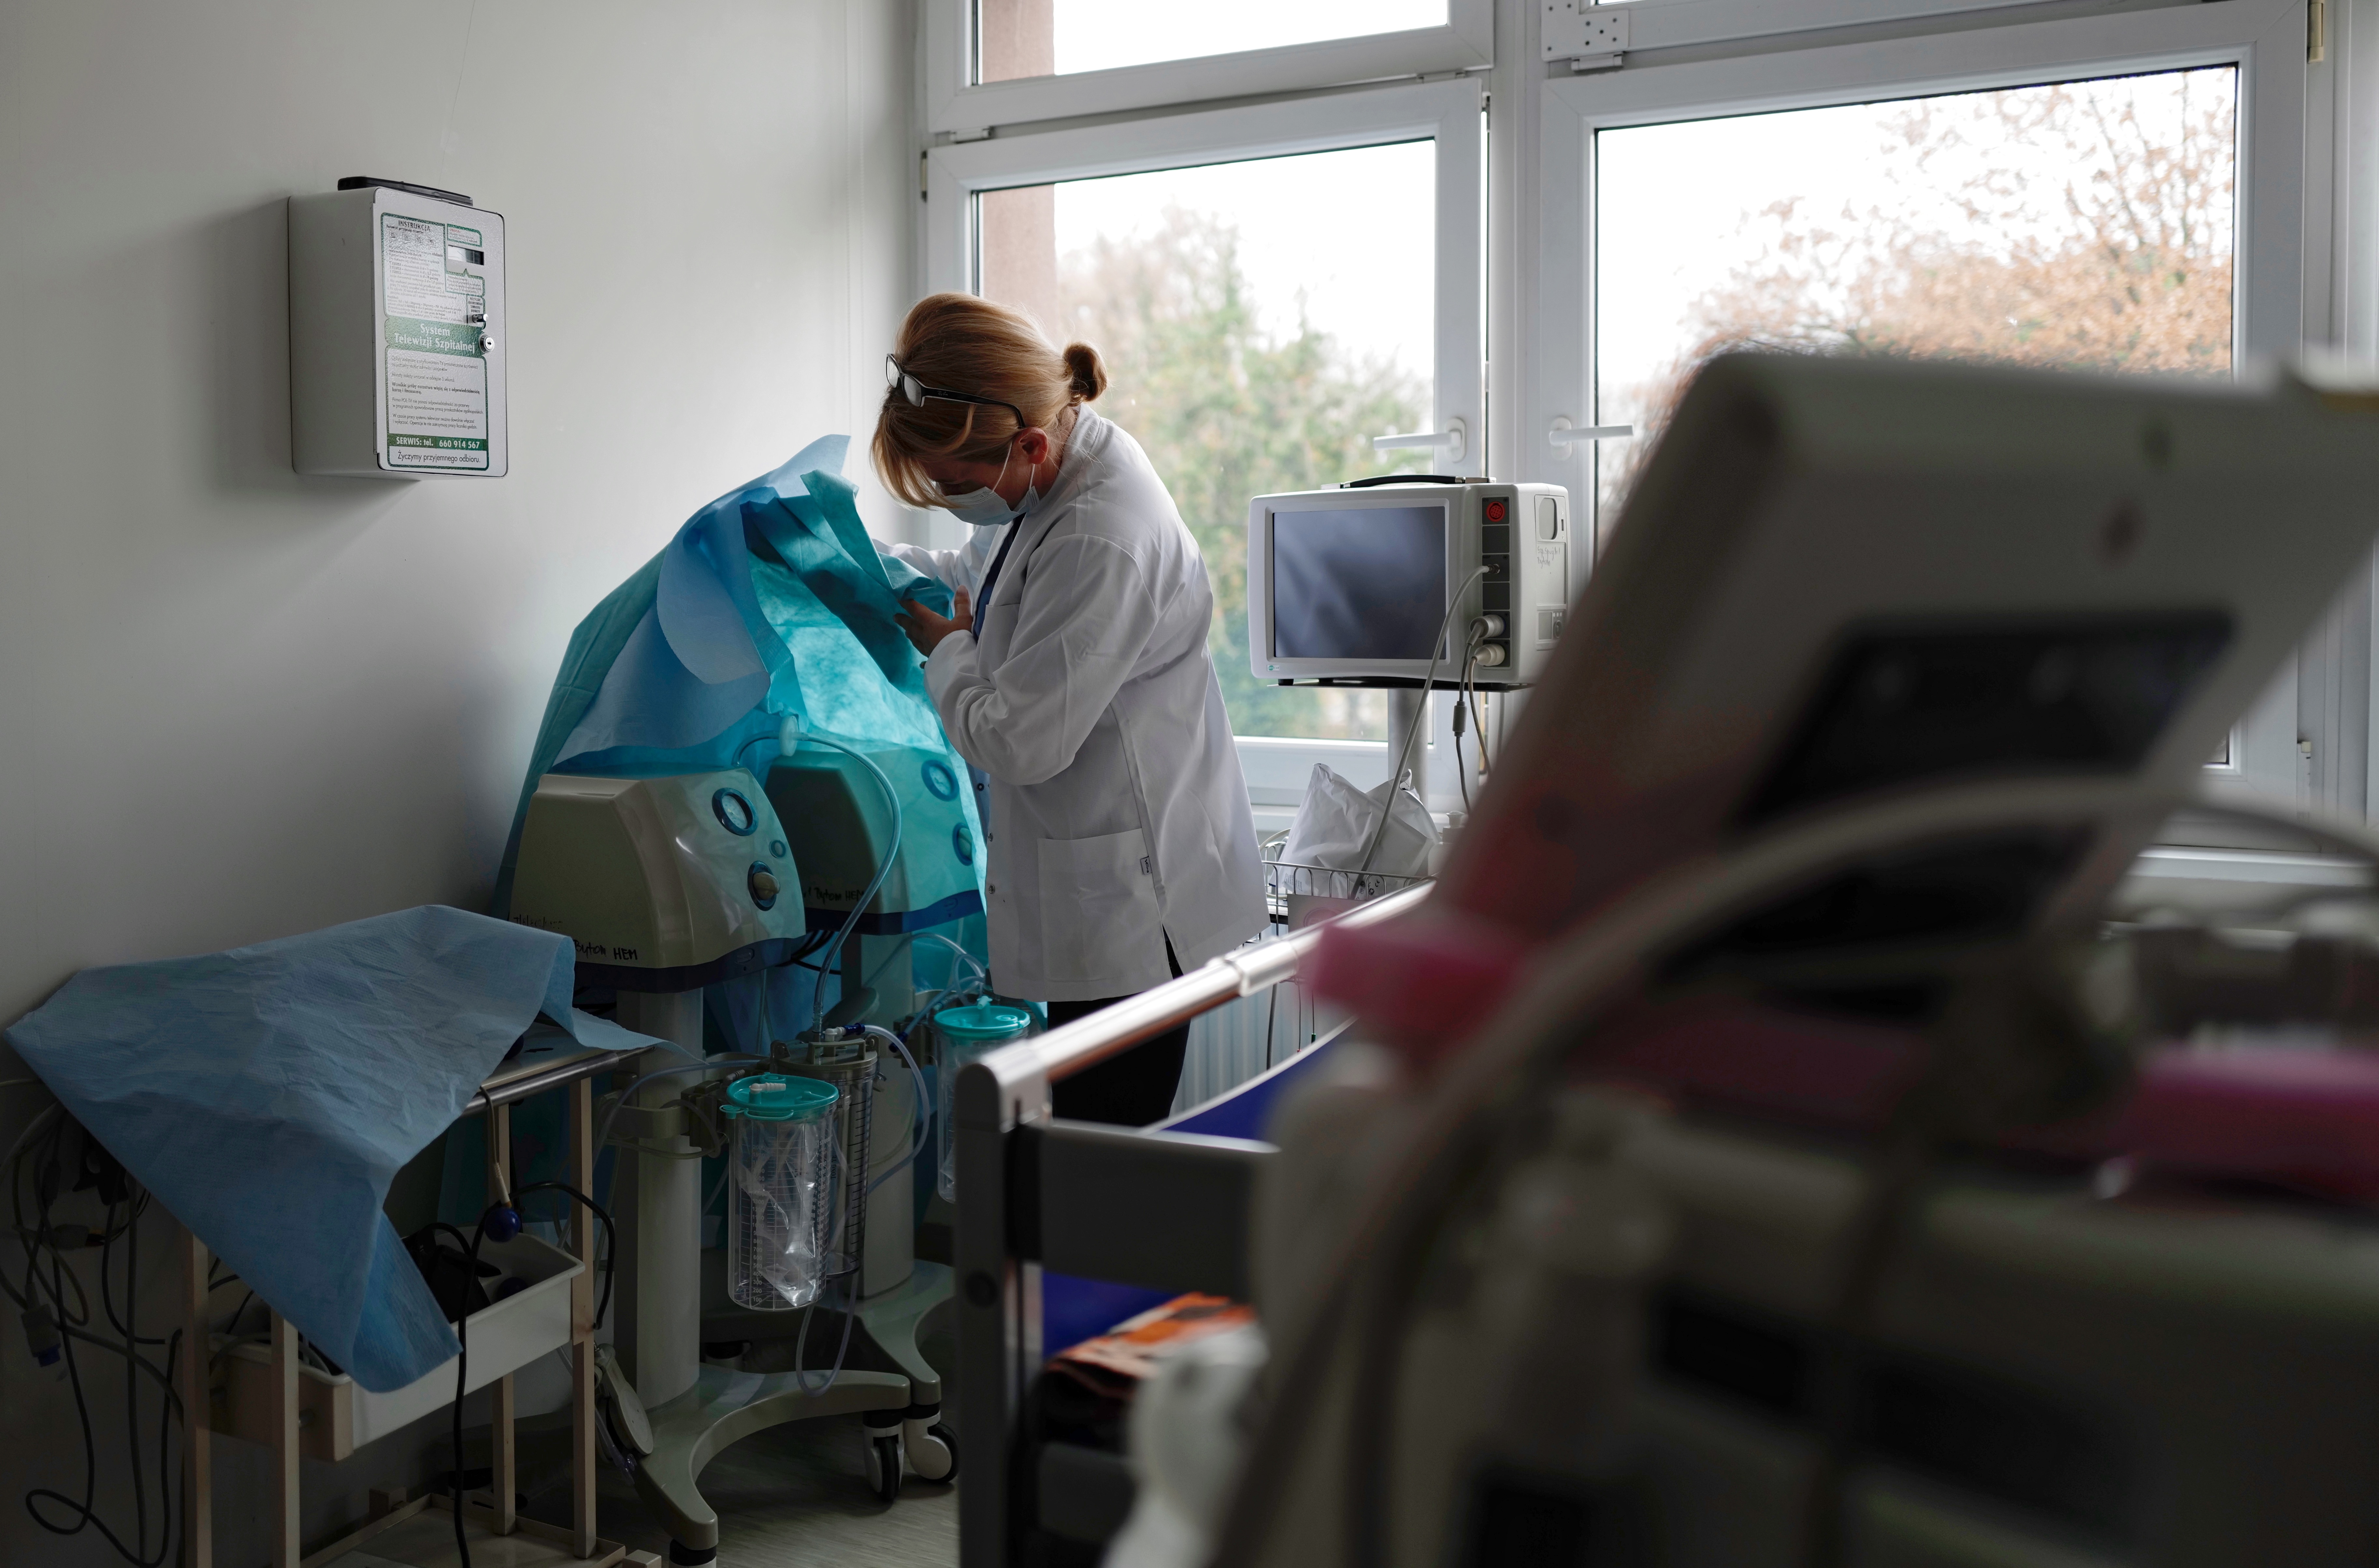 Nowy oddział dla pacjentów z COVID-19 powstaje w budynku Szpitala Specjalistycznego nr 1 przy ul. Żeromskiego 7 w Bytomiu